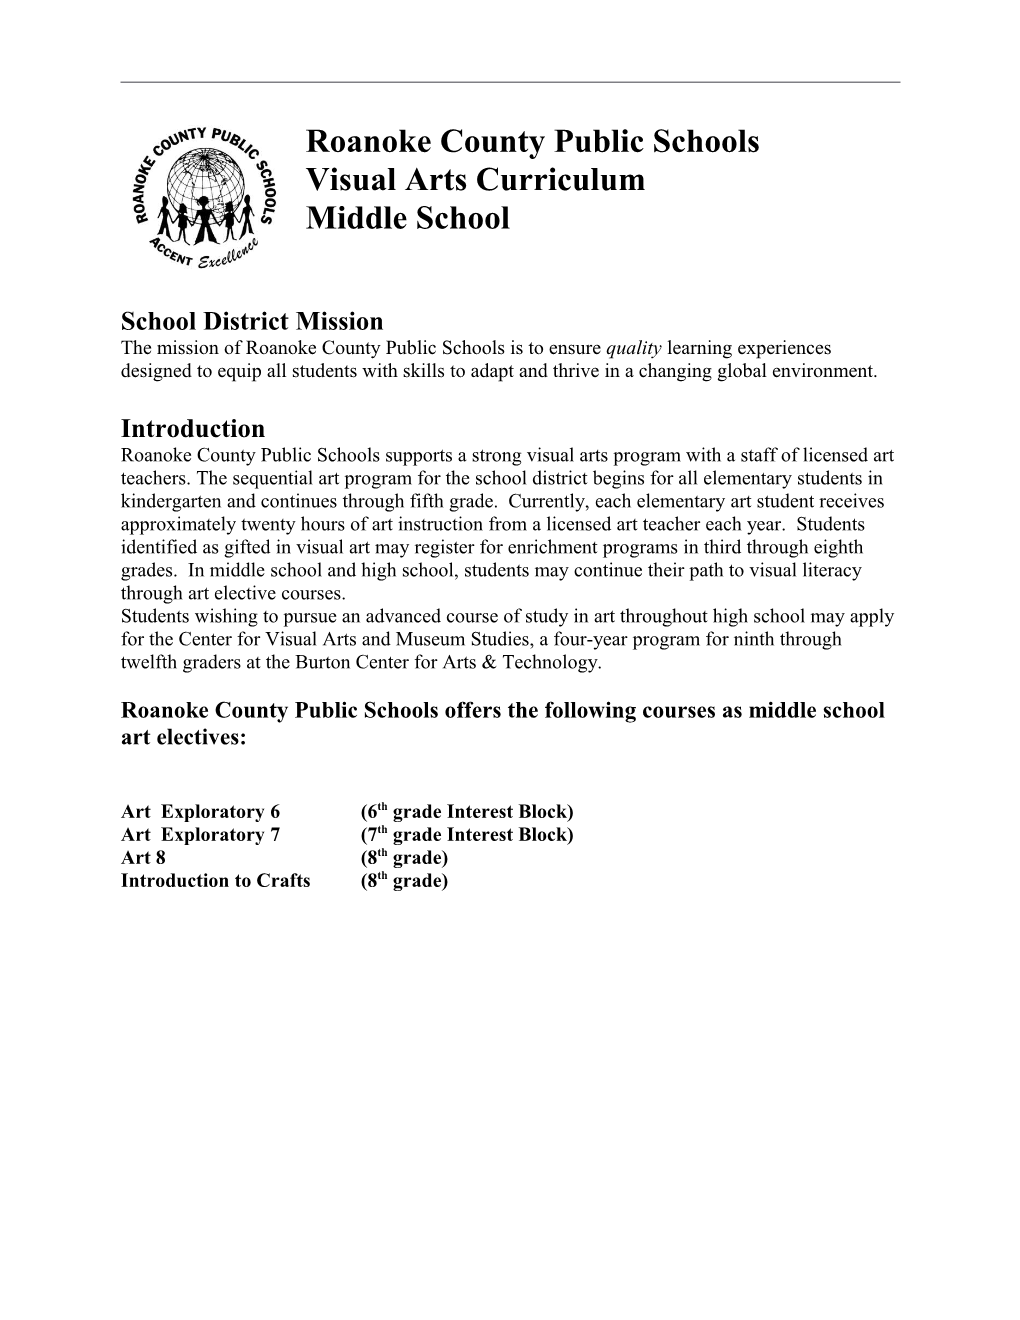 Visual Arts Curriculum